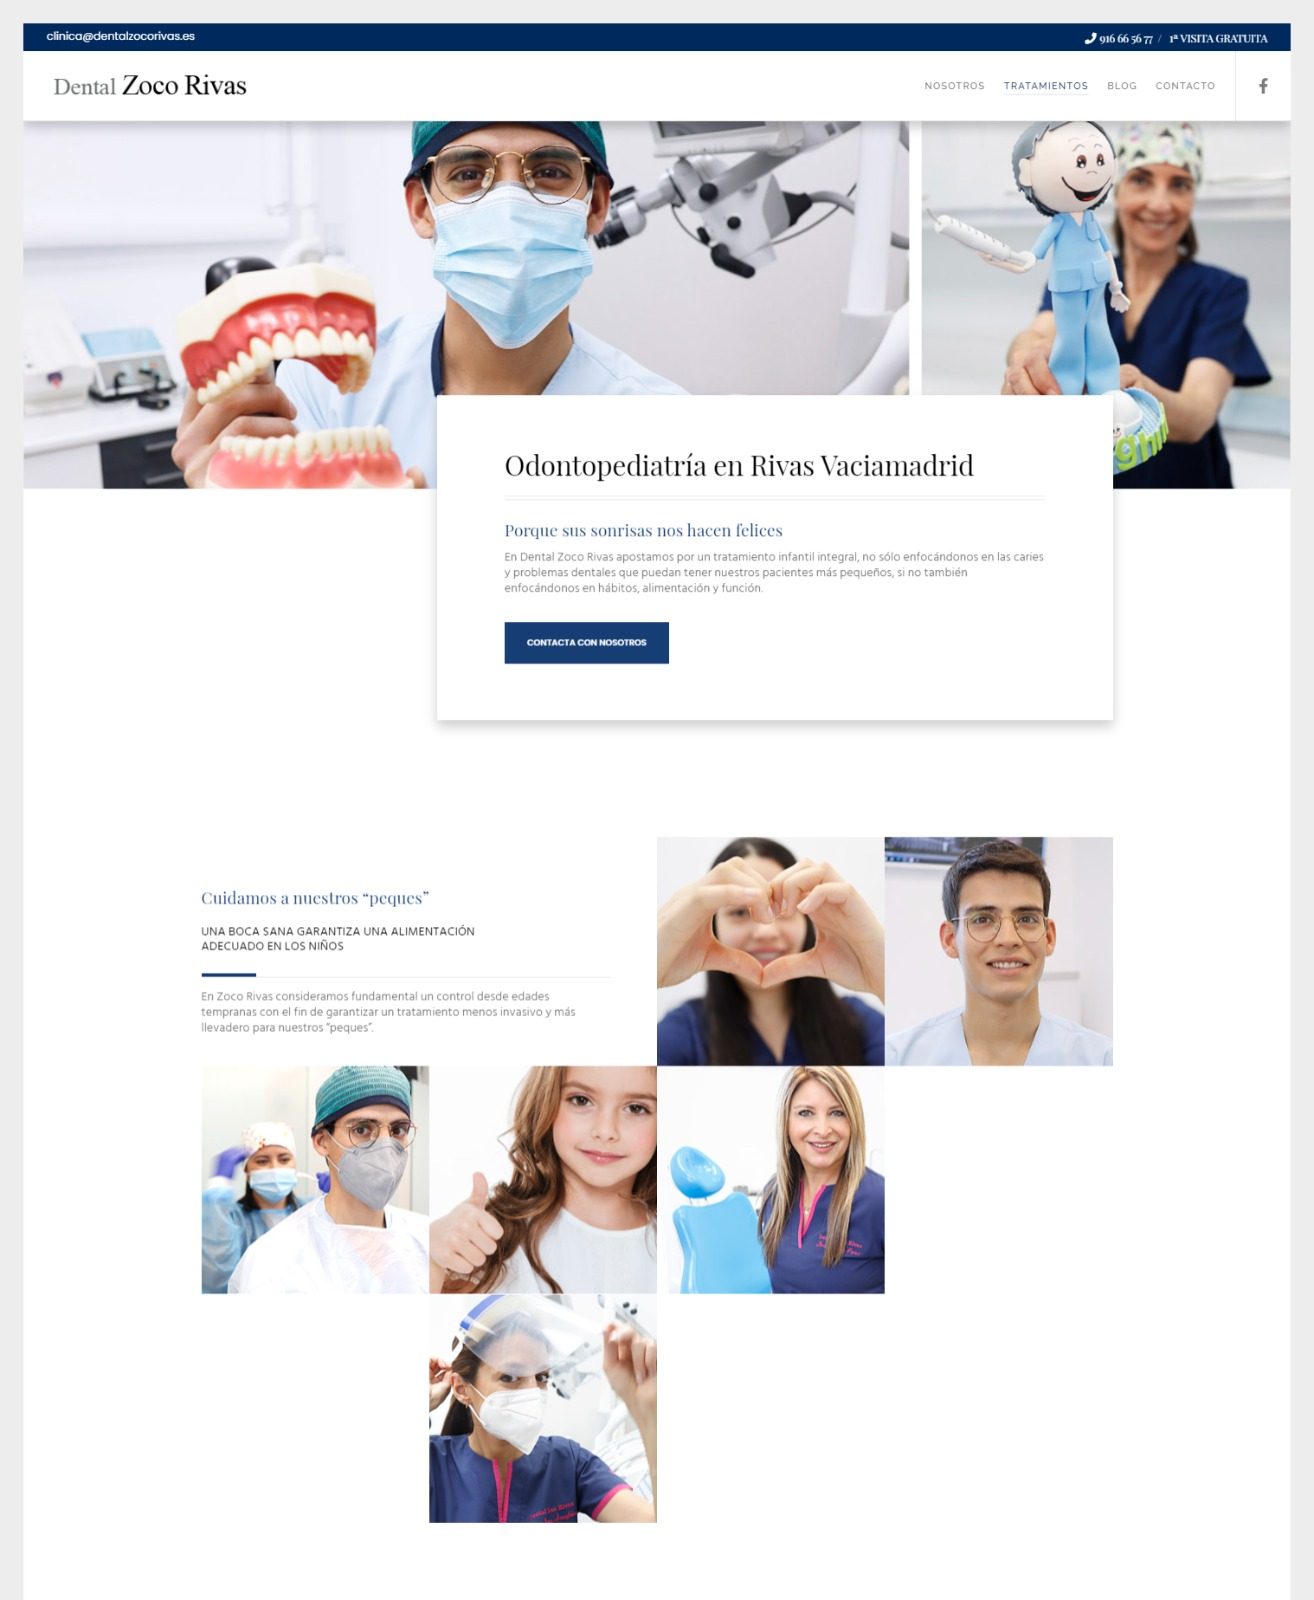 Marketing y diseño web para clínicas dentales en Madrid. La página de Zoco Rivas